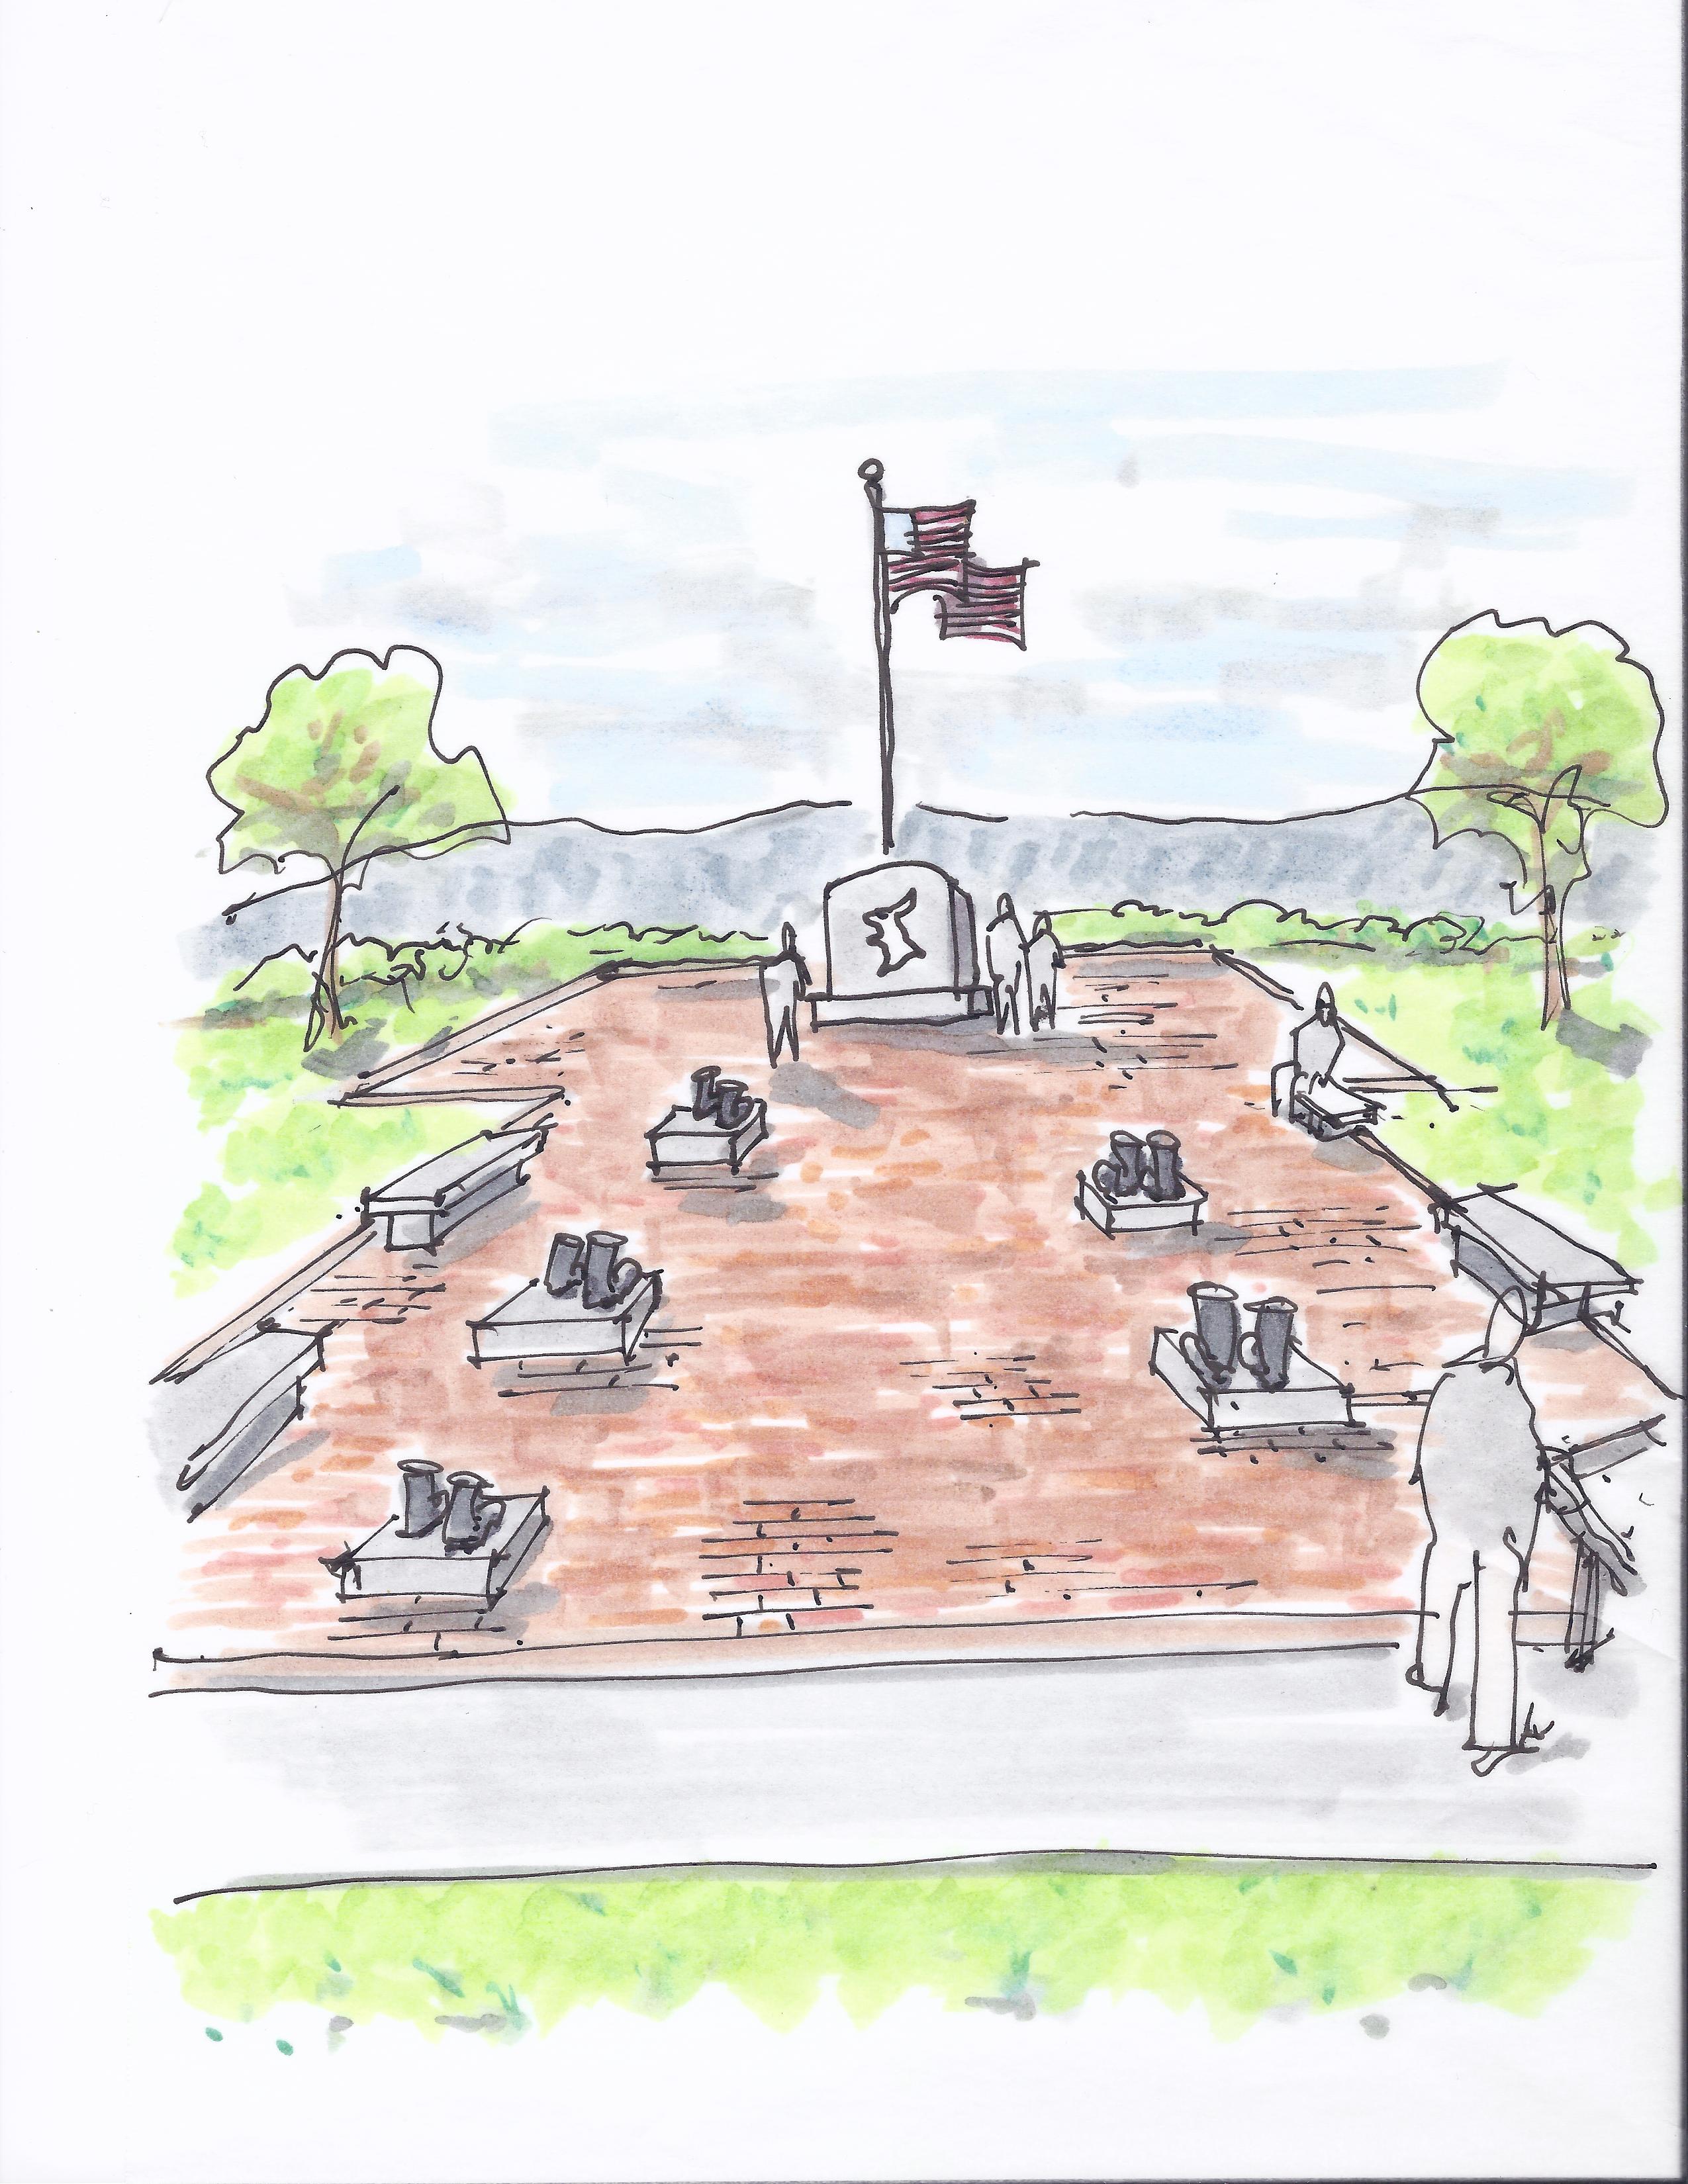 1029 Korean War Memorial Sketch